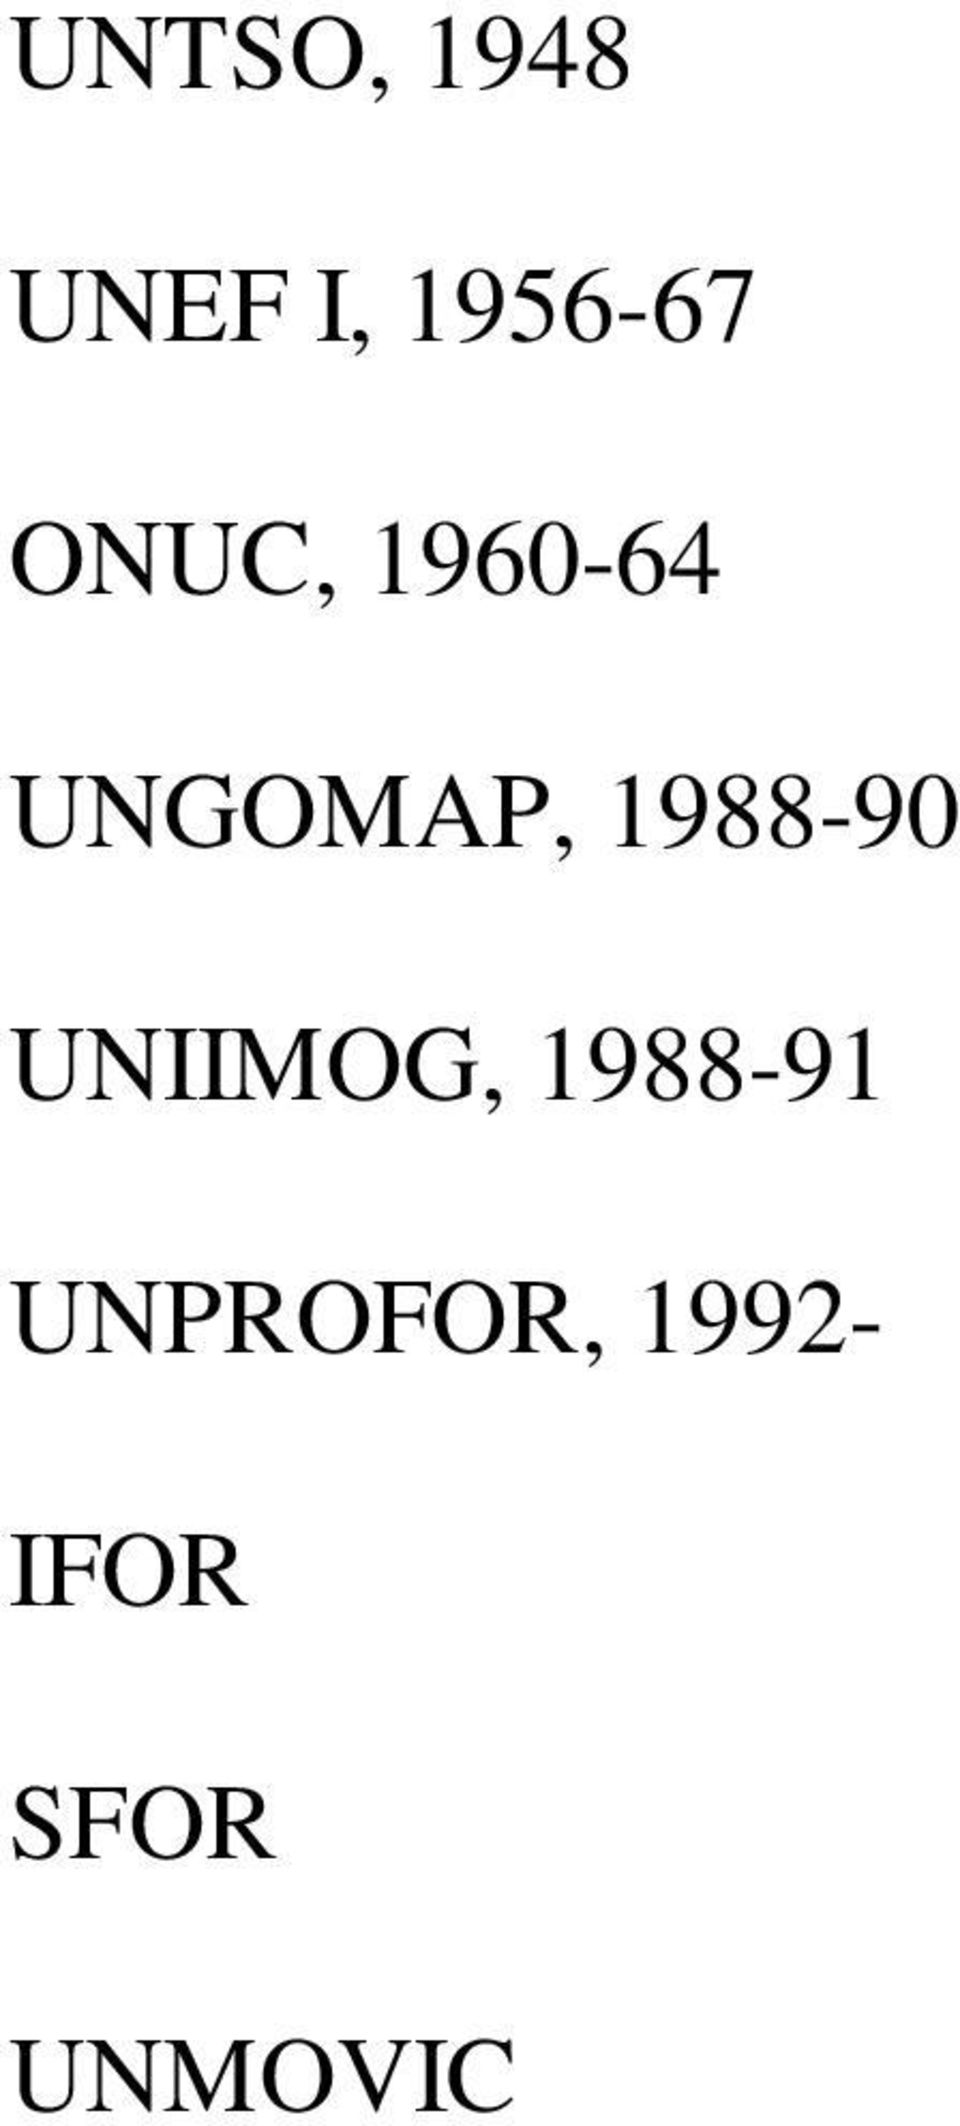 1988-90 UNIIMOG, 1988-91